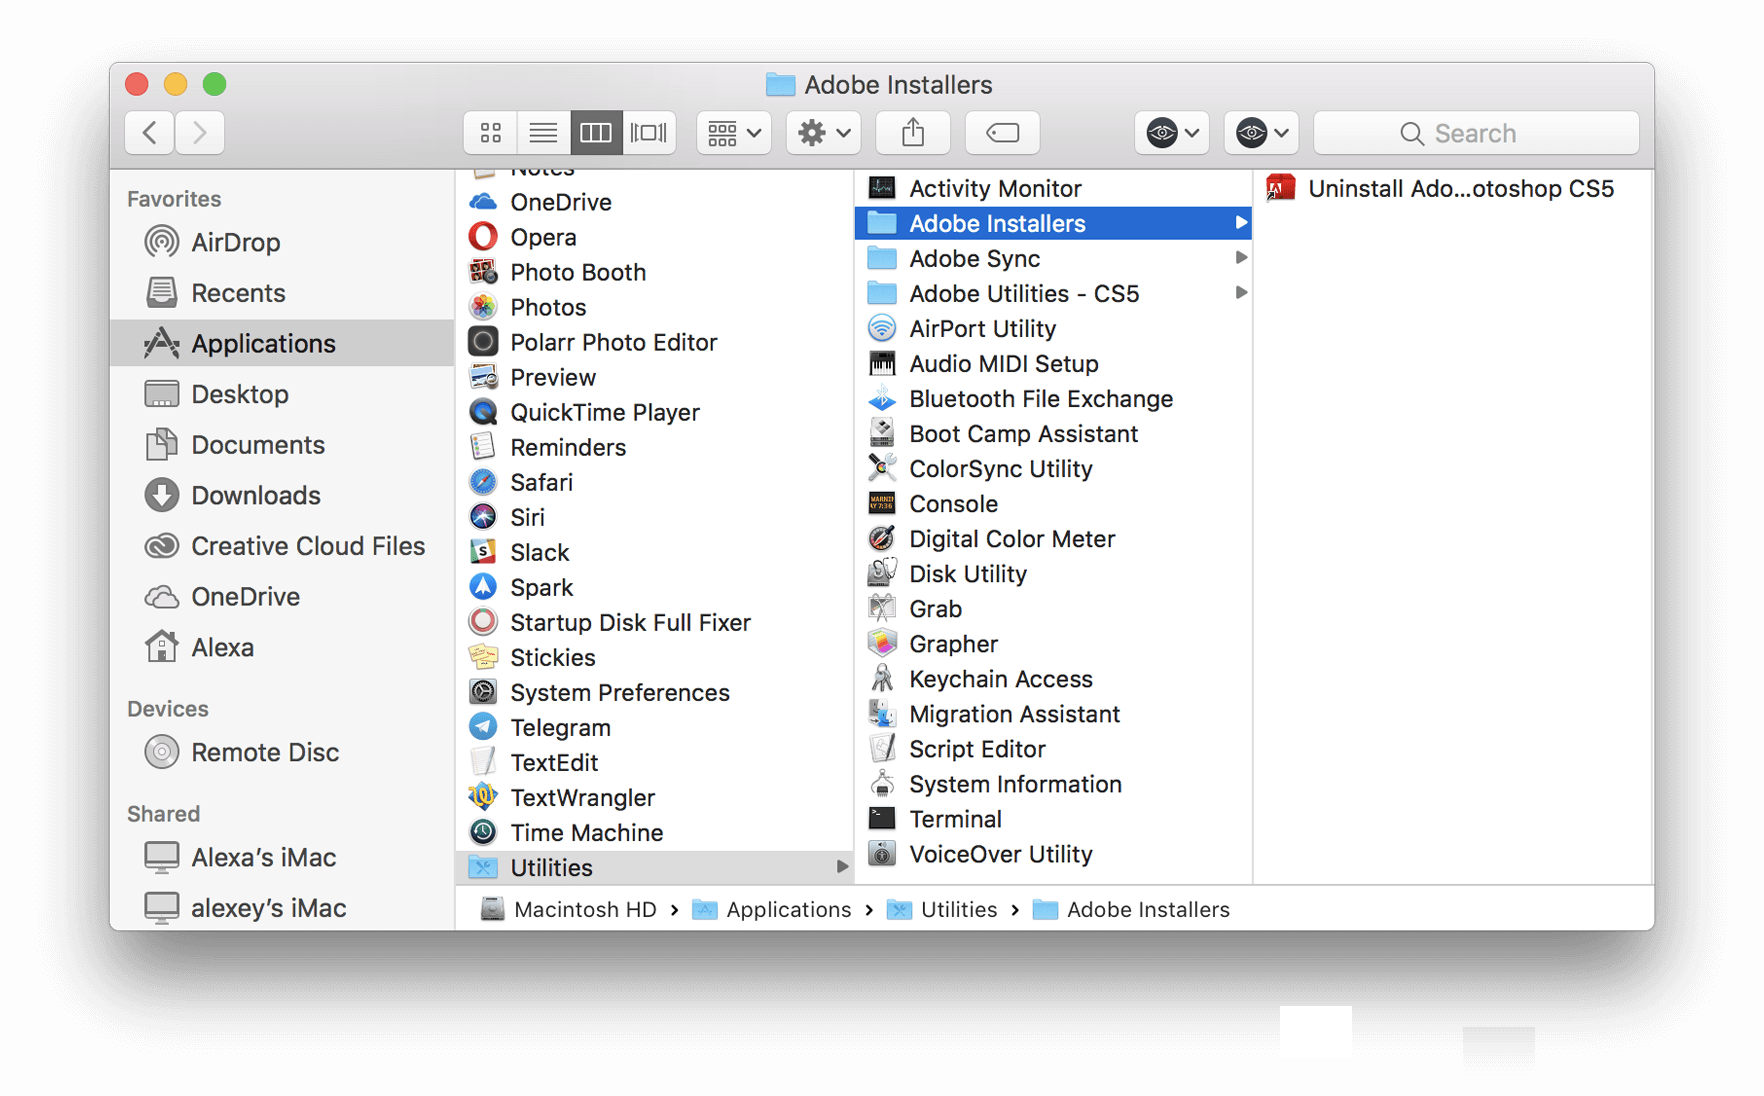 Launchpad macbook. Hướng dẫn xóa ứng dụng trên iMac. Macbook